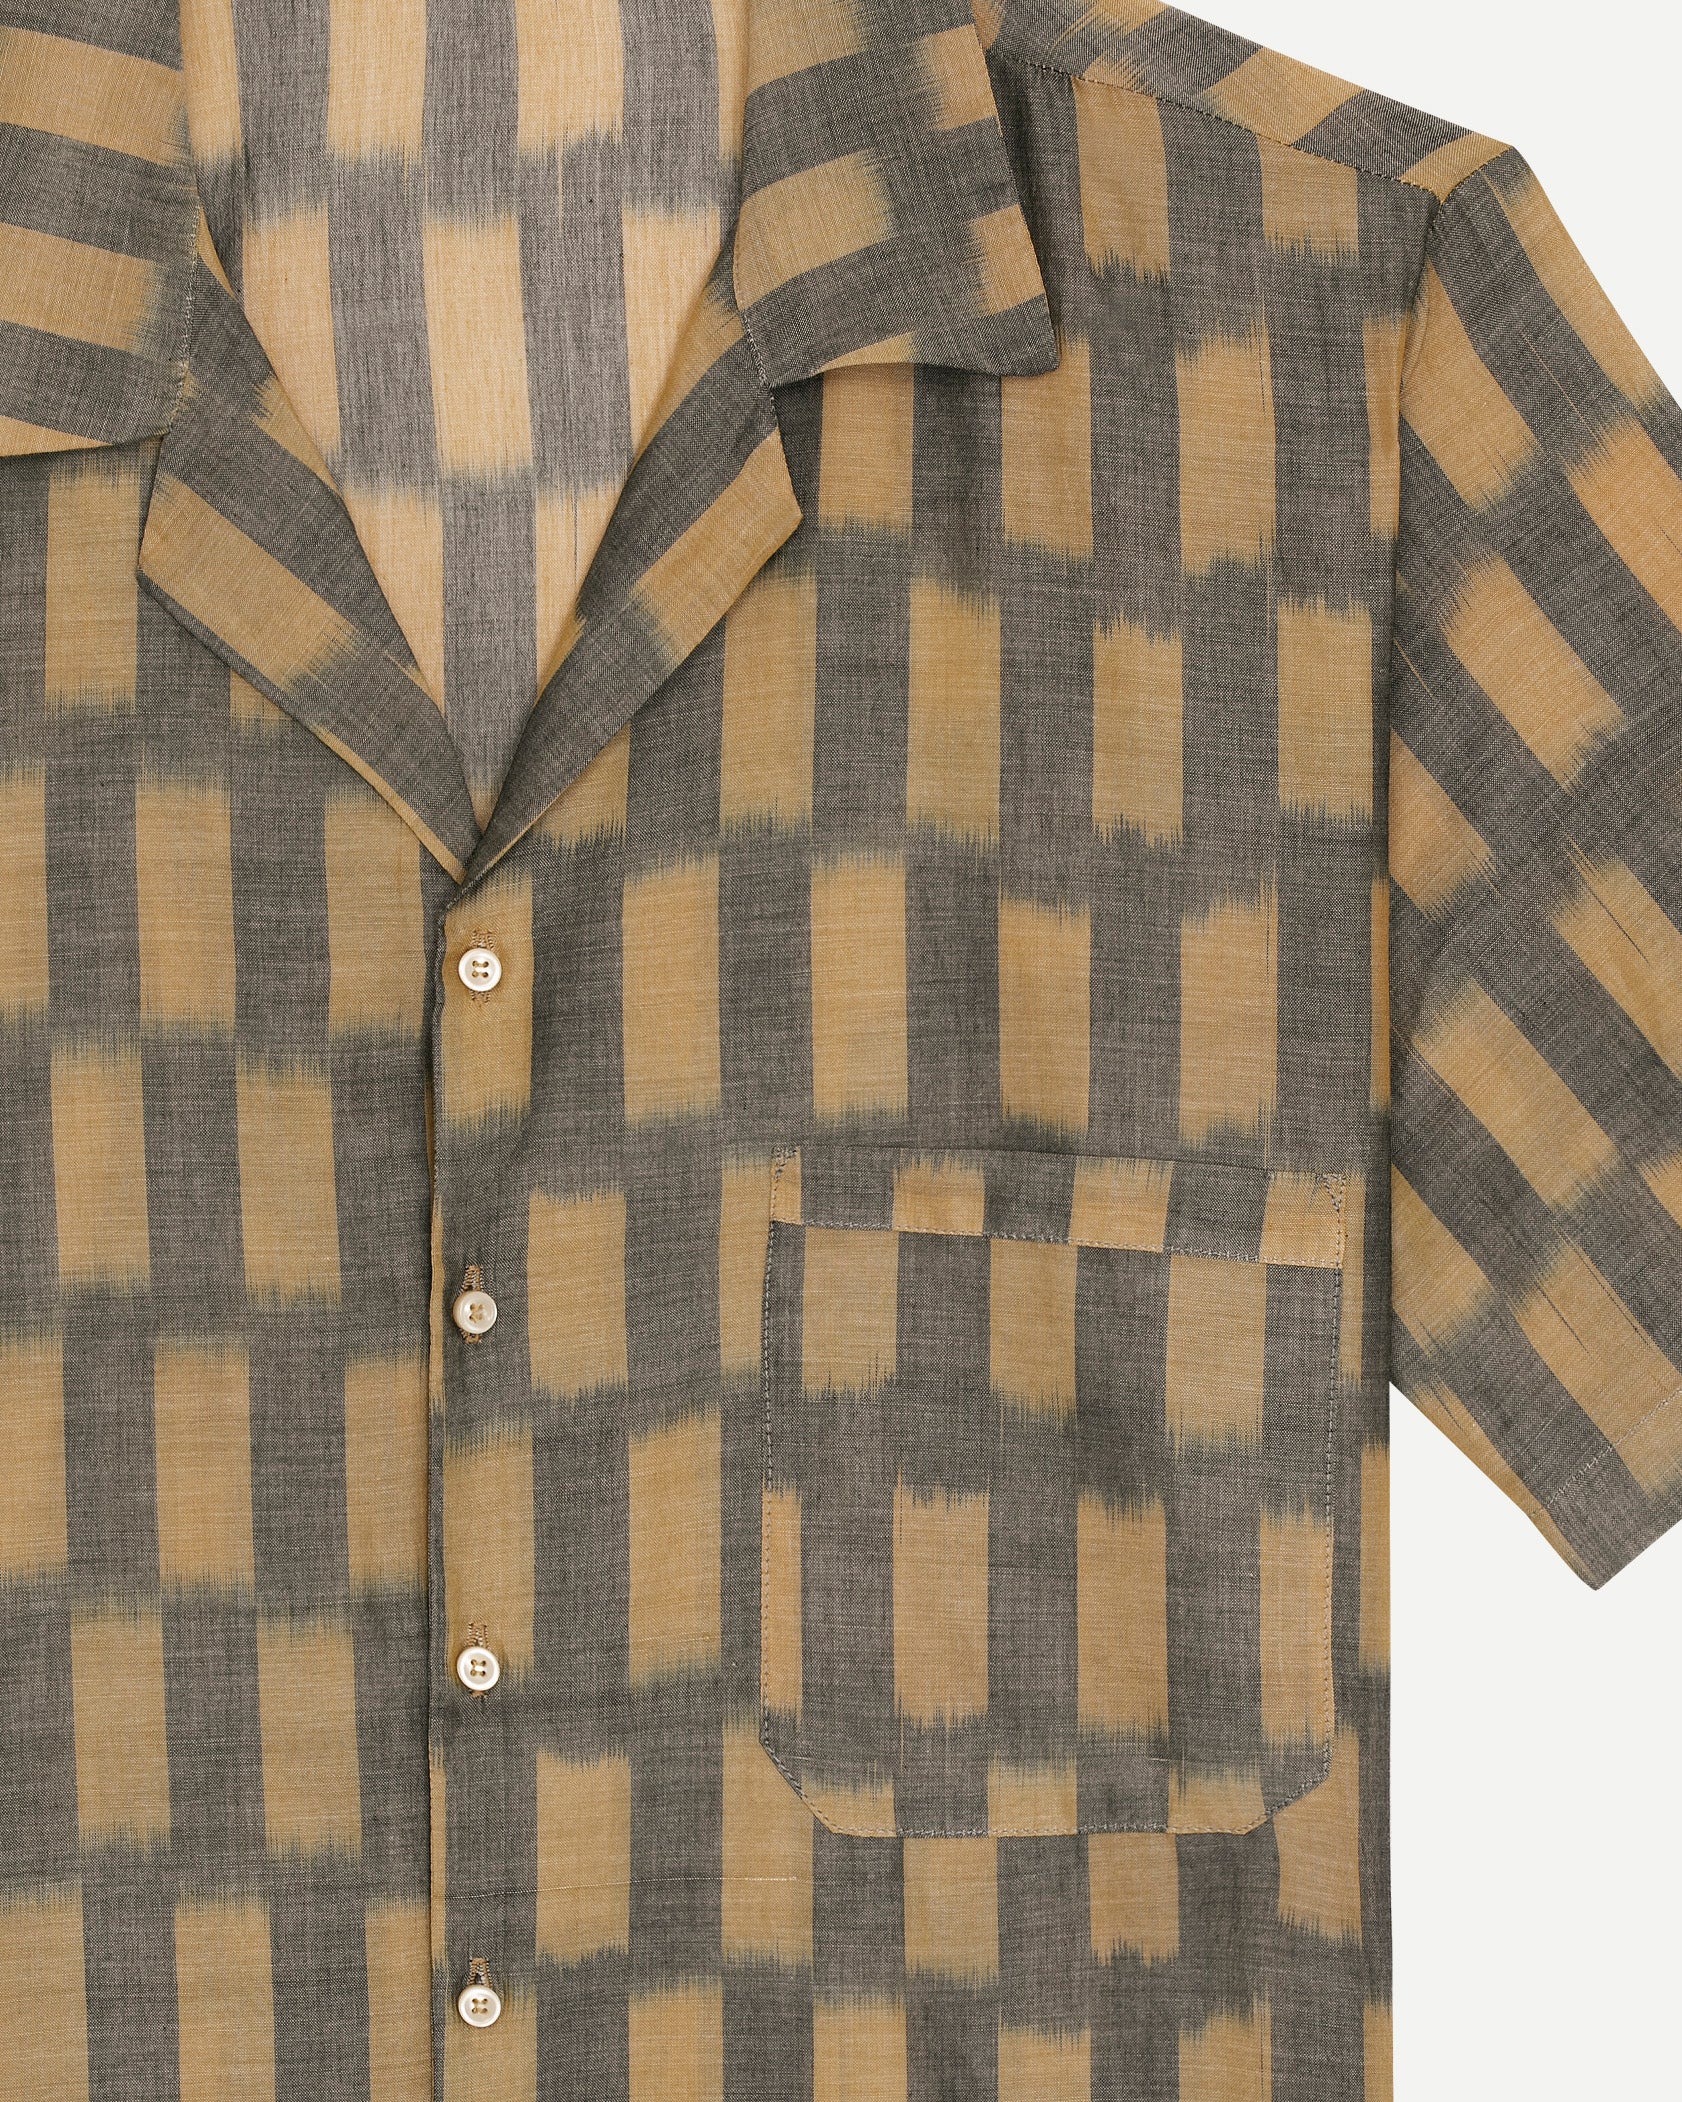 Chemise de luxe pour homme Erevan, à manche courte à col camp, coton ikat à damier, fabriquée en france